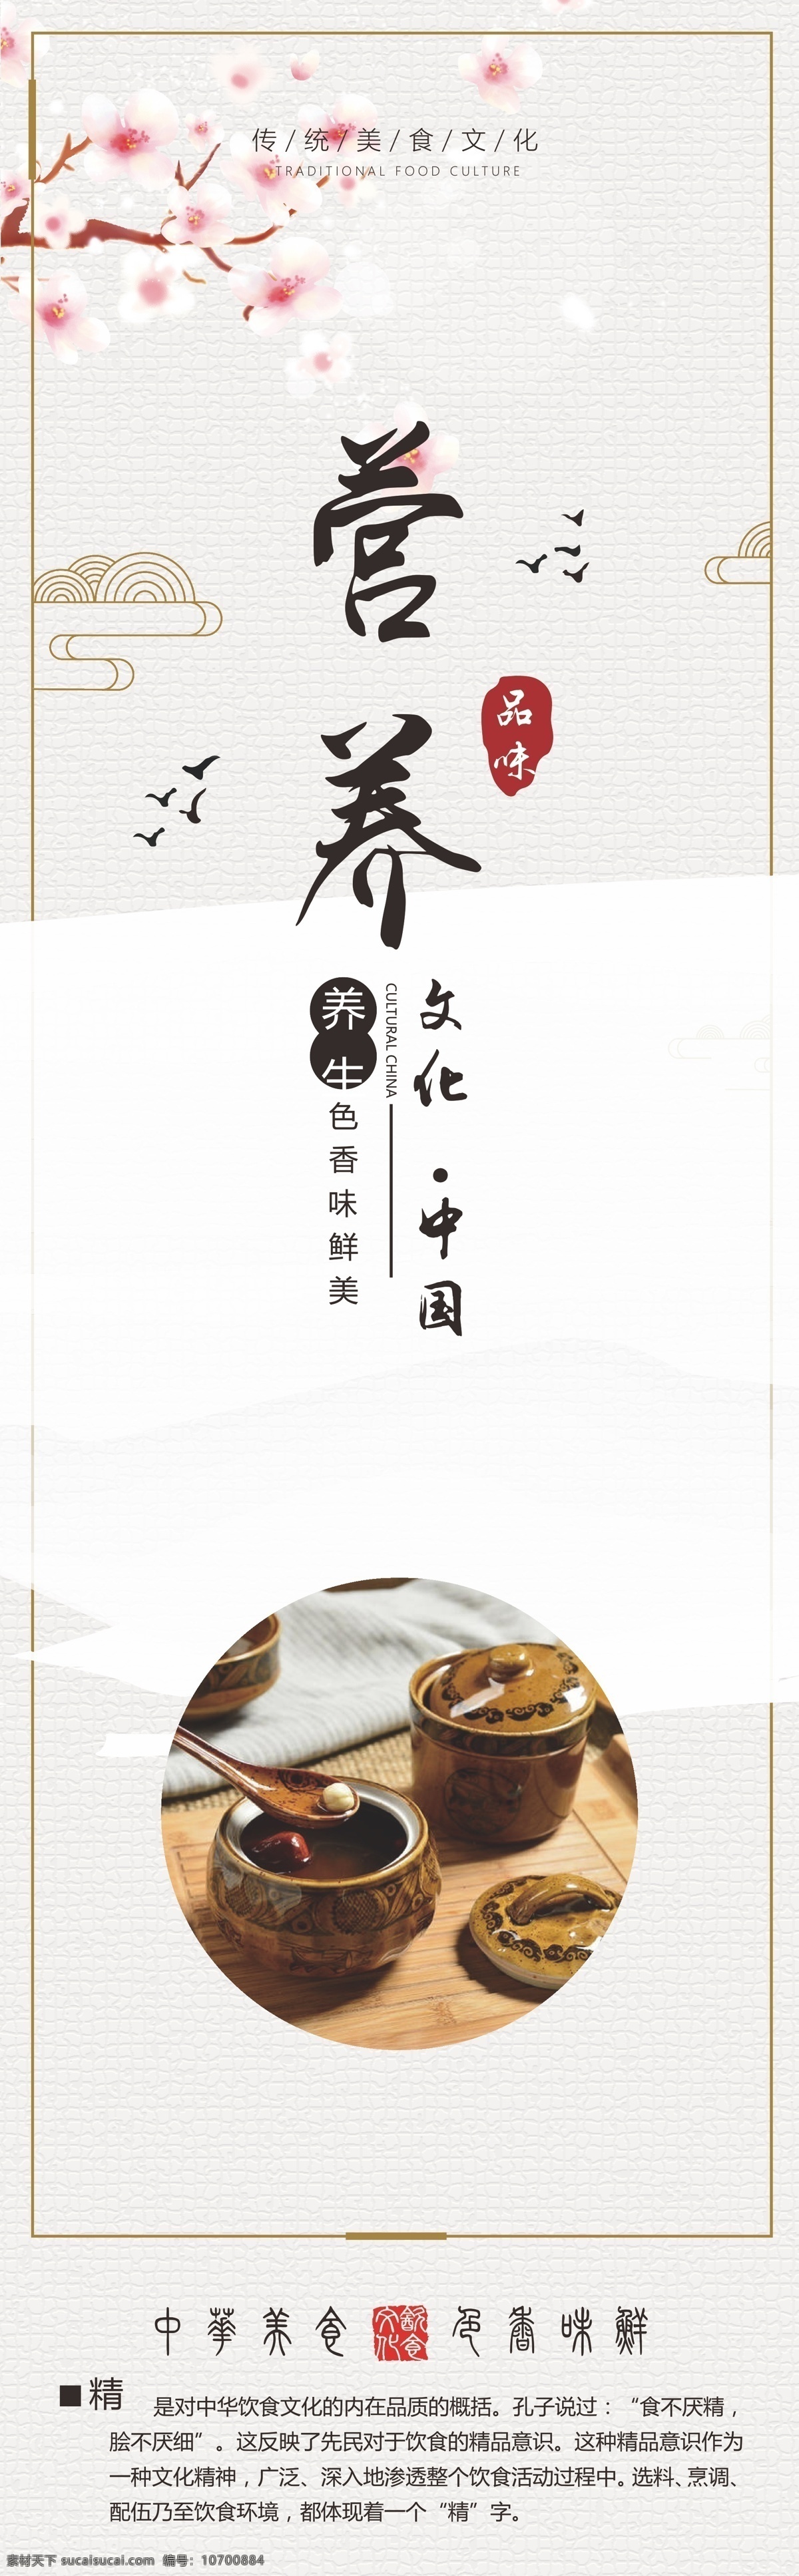 家的味道图片 中国味道 美食文化 舌尖上的中国 营养美味 饮食文化 展板模板